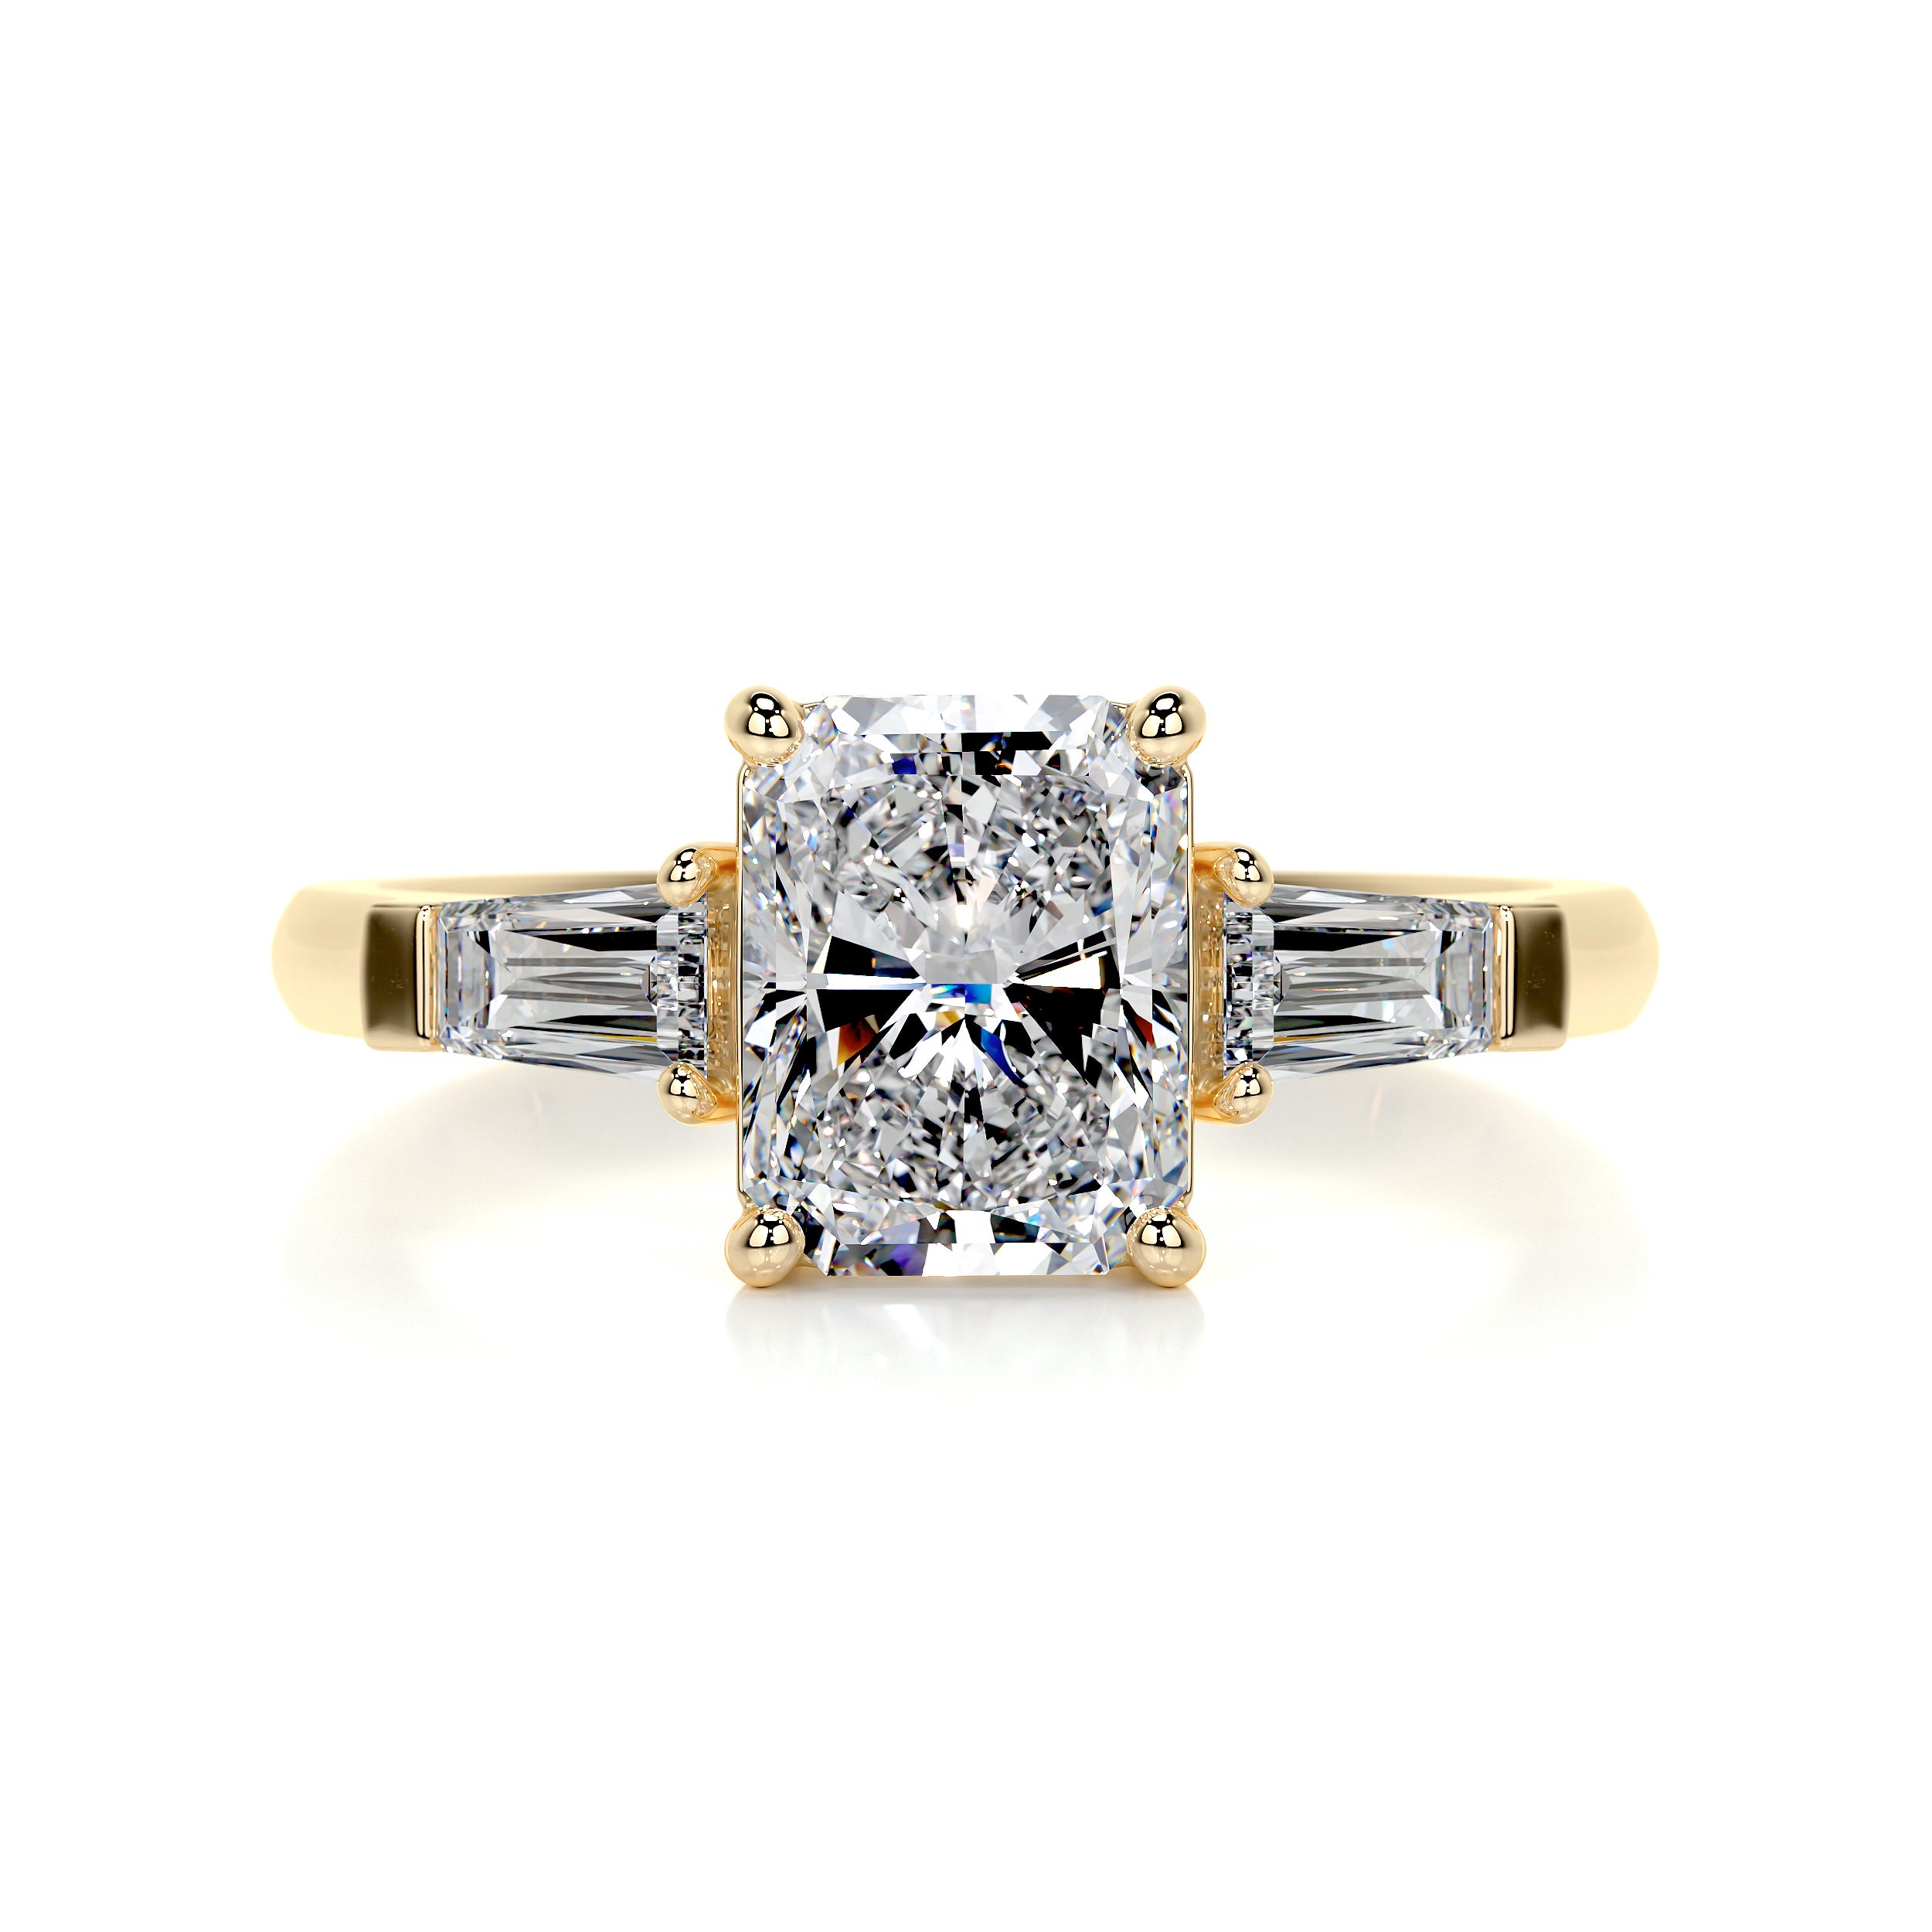 Skylar Diamond Engagement Ring   (1.8 Carat) -18K Yellow Gold